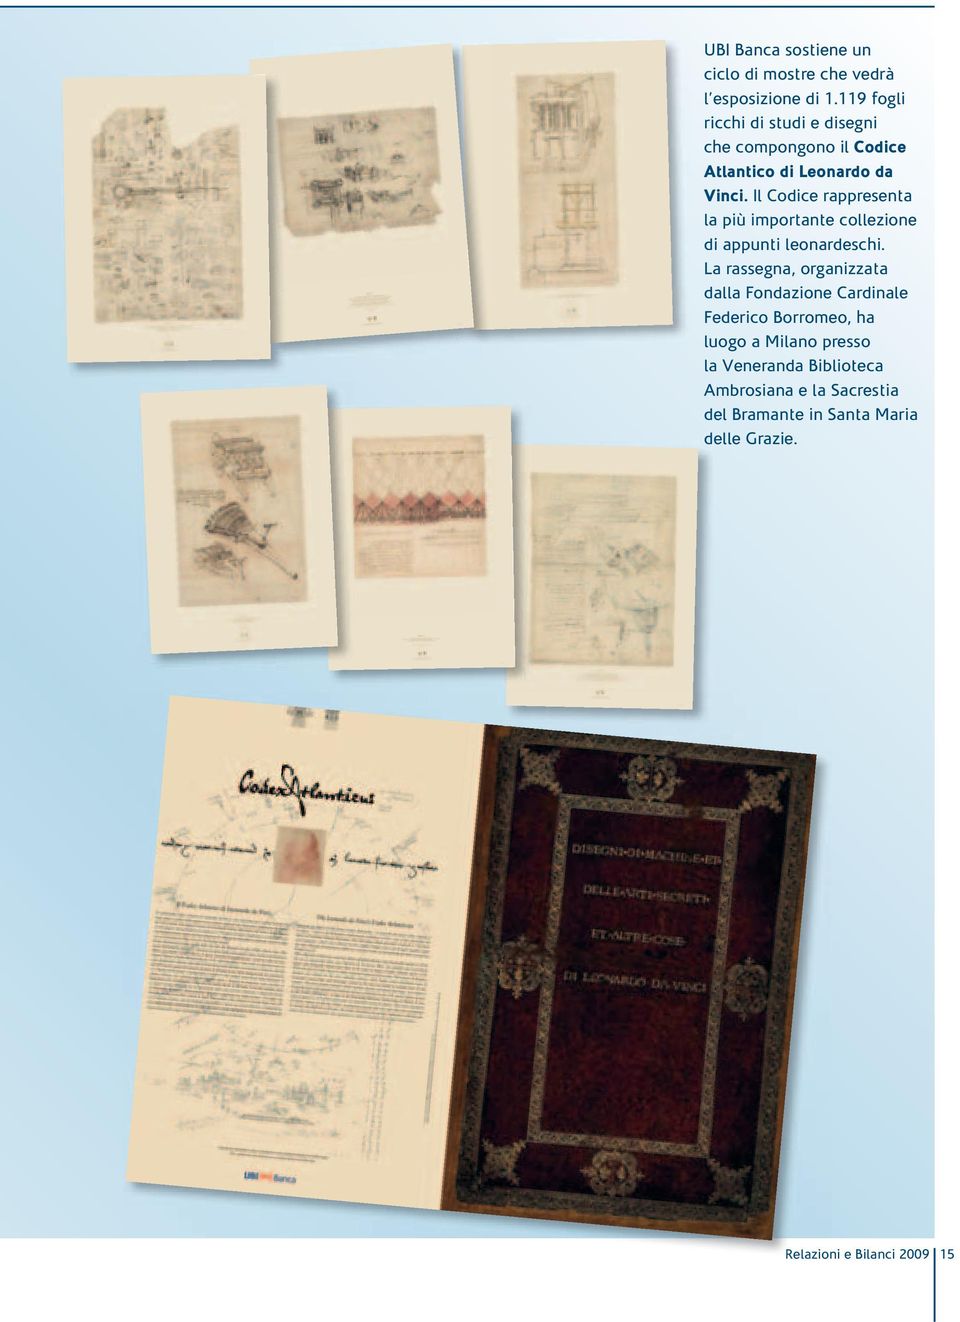 Il Codice rappresenta la più importante collezione di appunti leonardeschi.